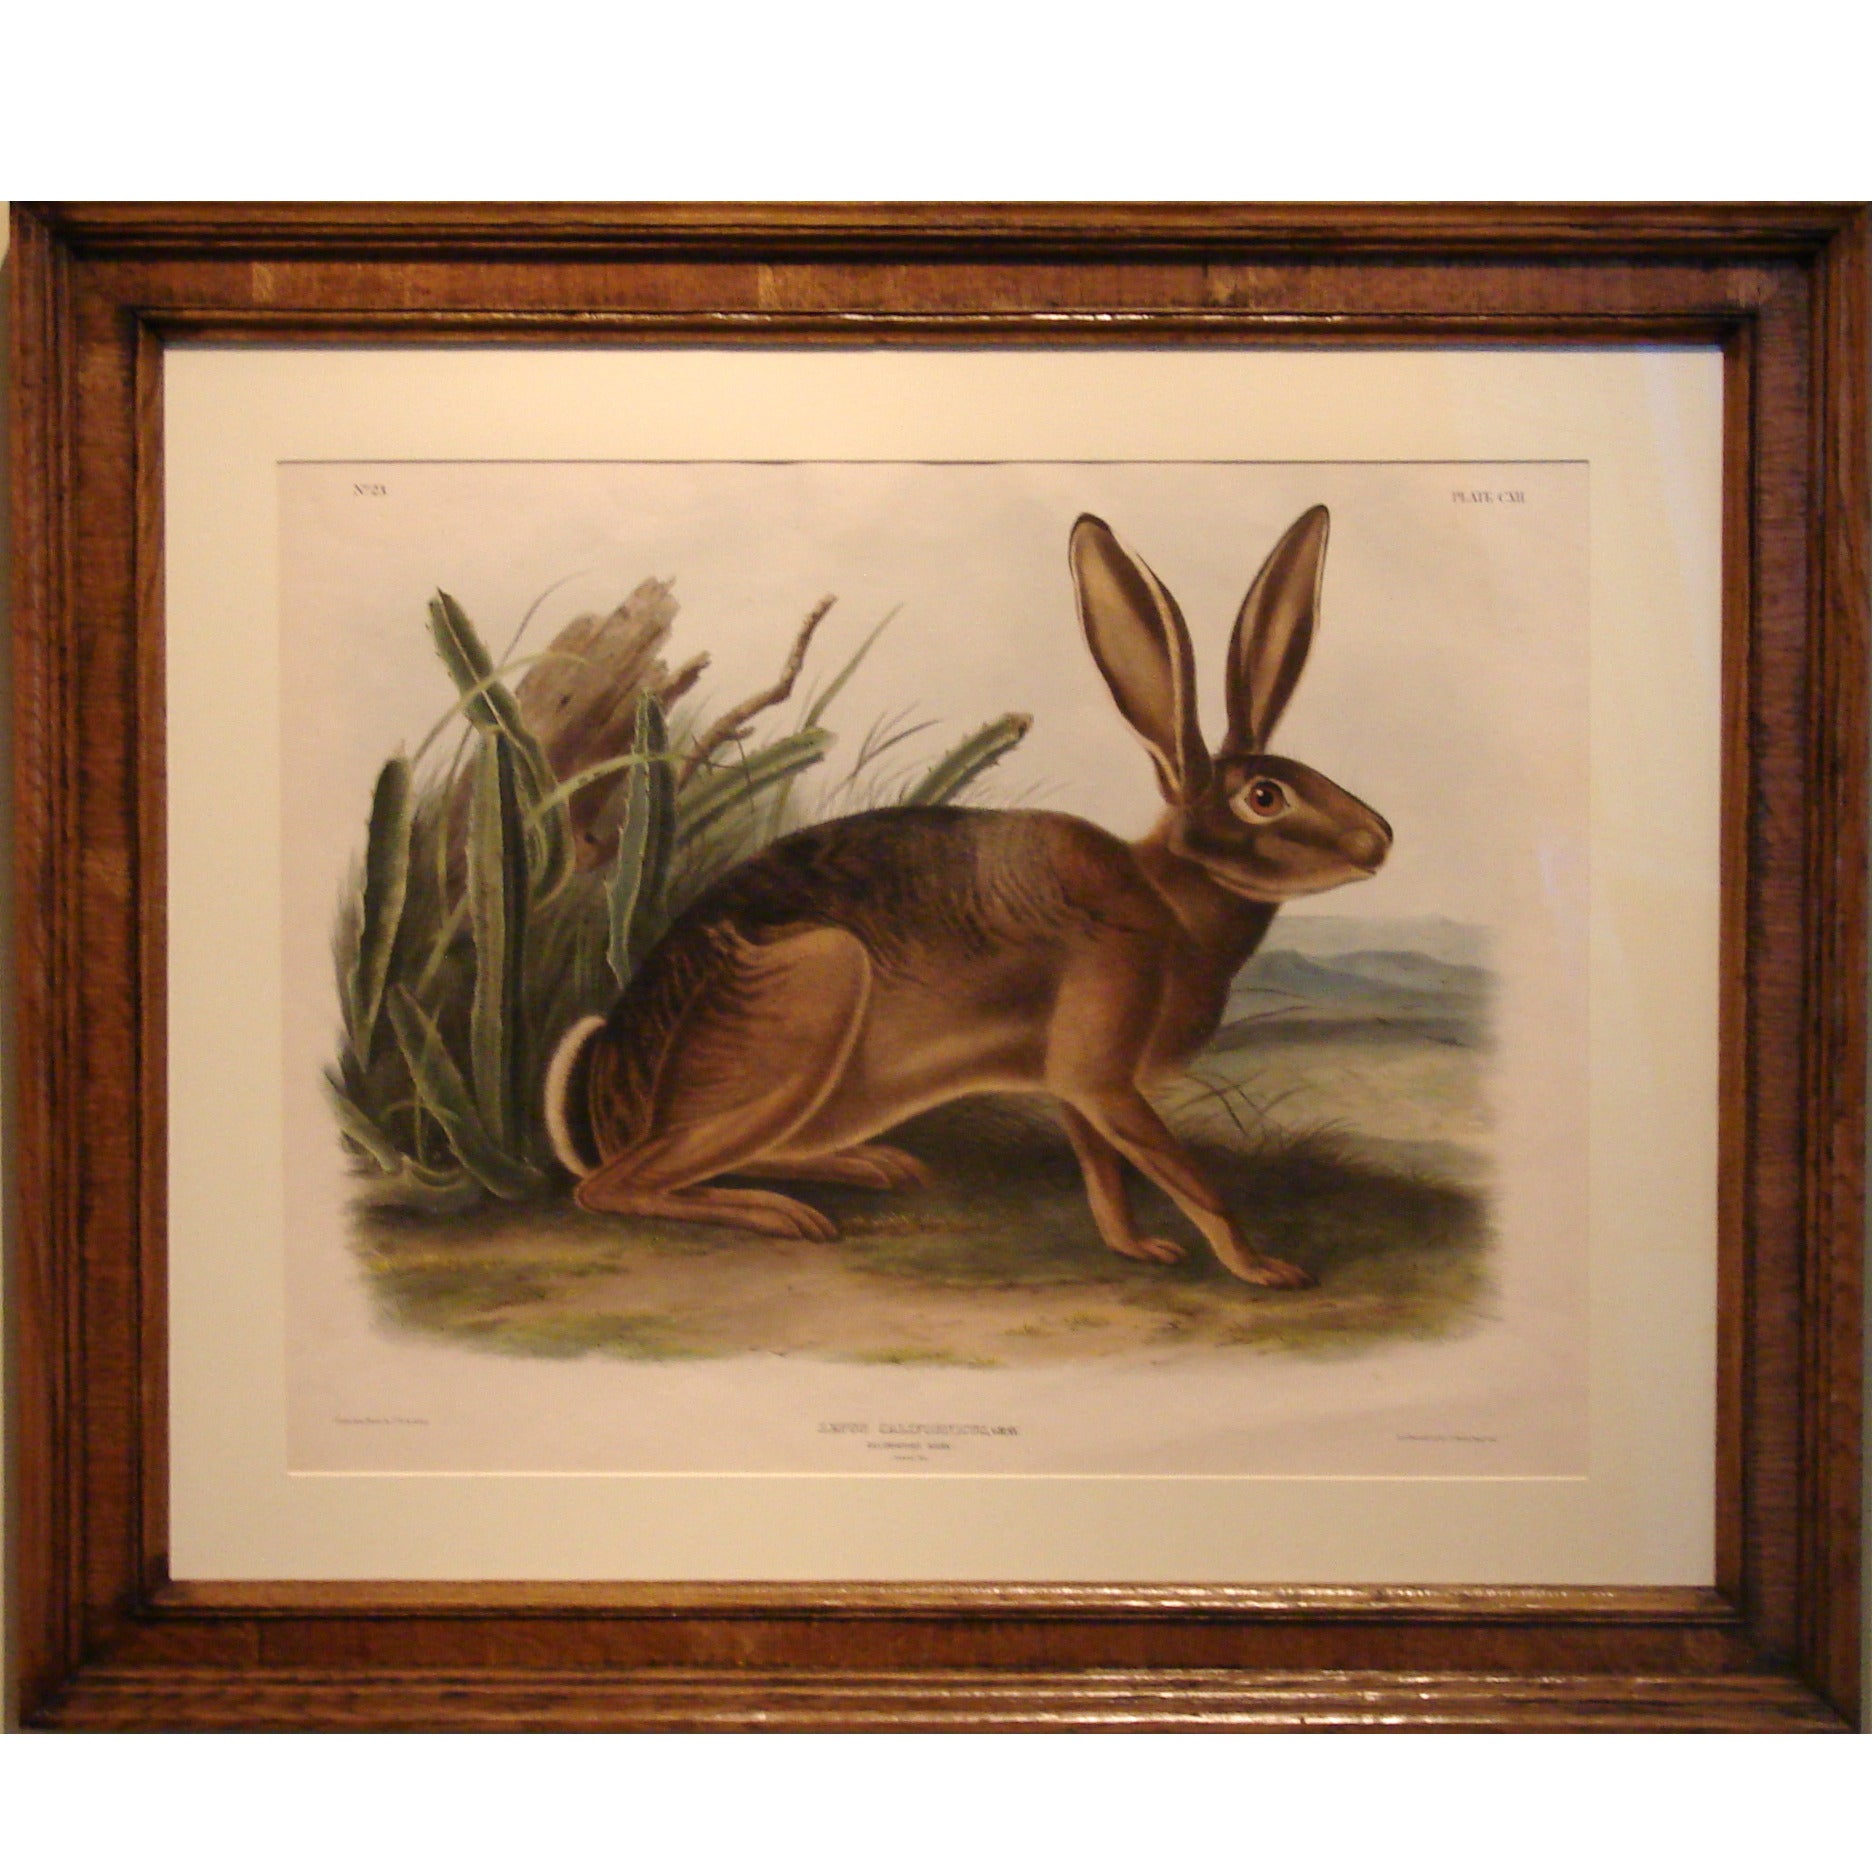 John Woodhouse Audubon, California Hare ‘Pl. CXII’, 1847